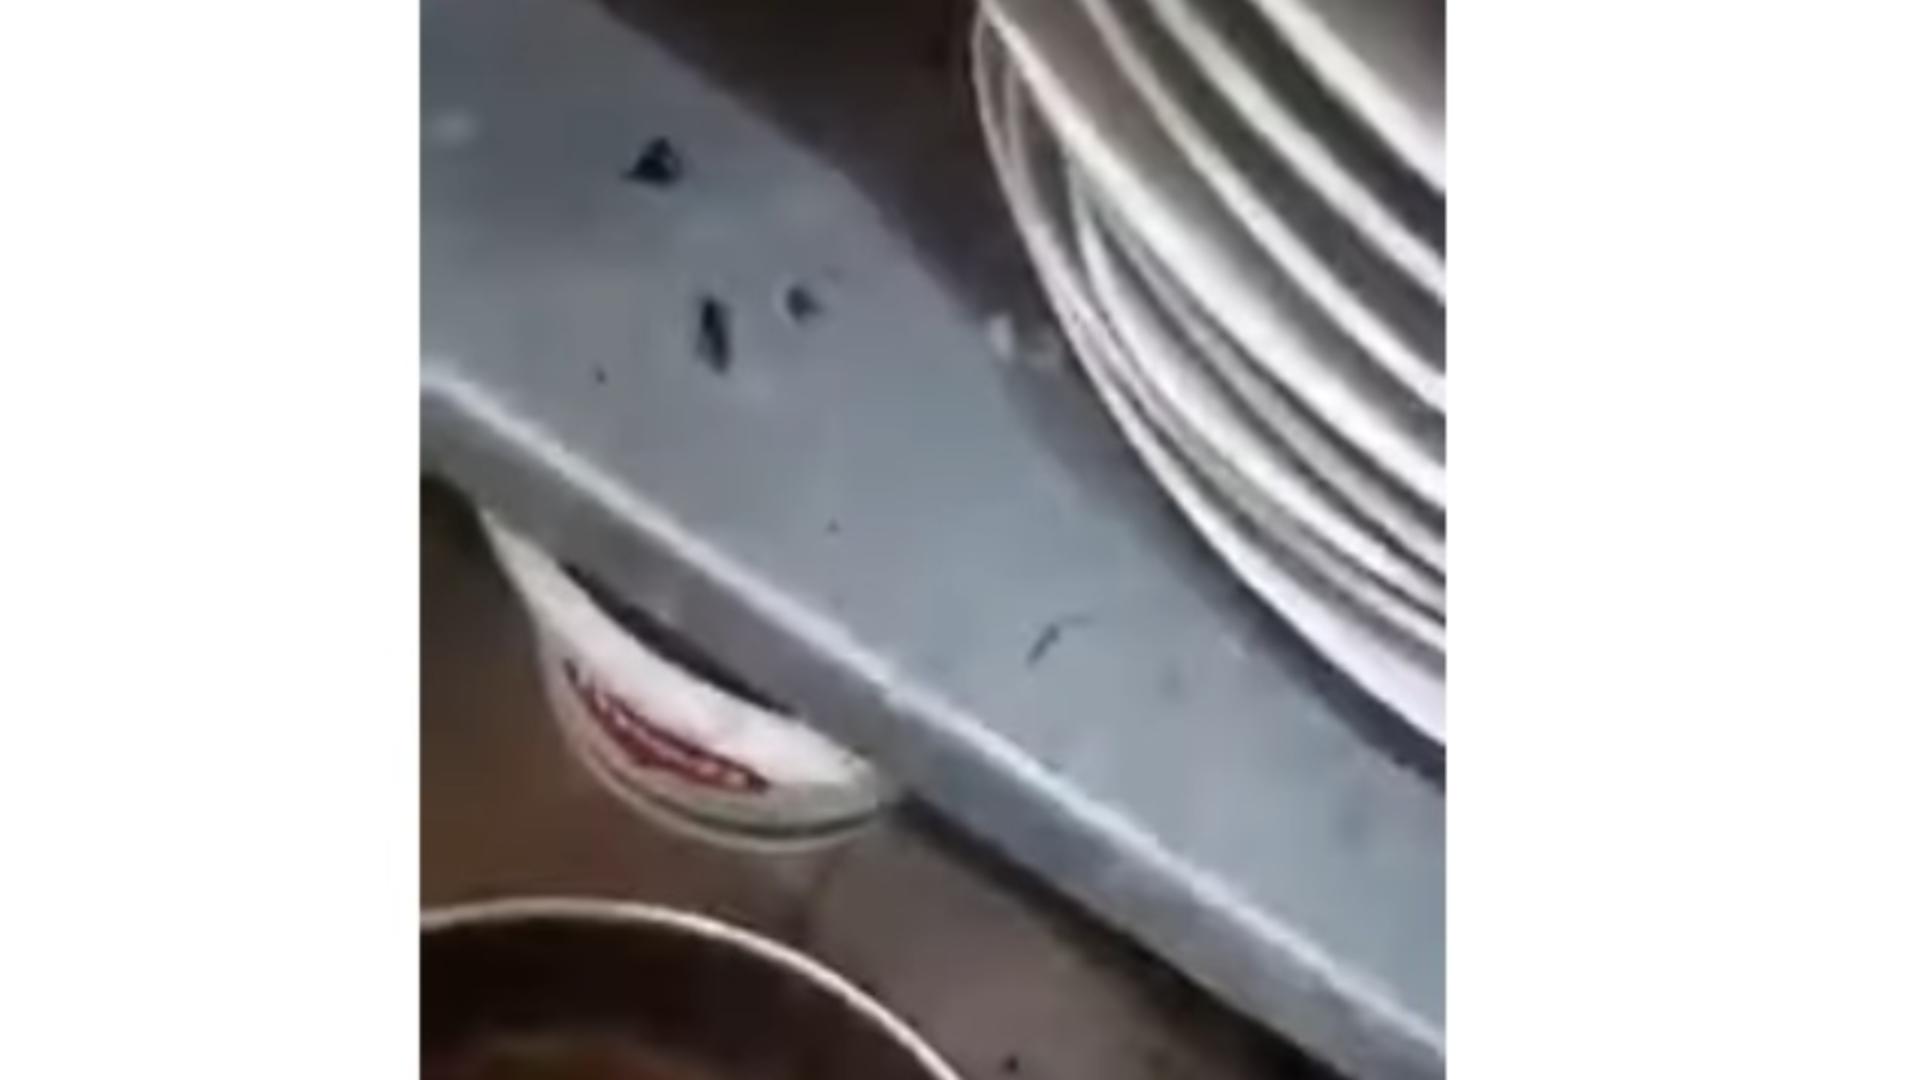 Gândaci și mizerie de nedescris în bucătăria unui celebru restaurant: Insectele mișunau în voie peste tot - Imagini 